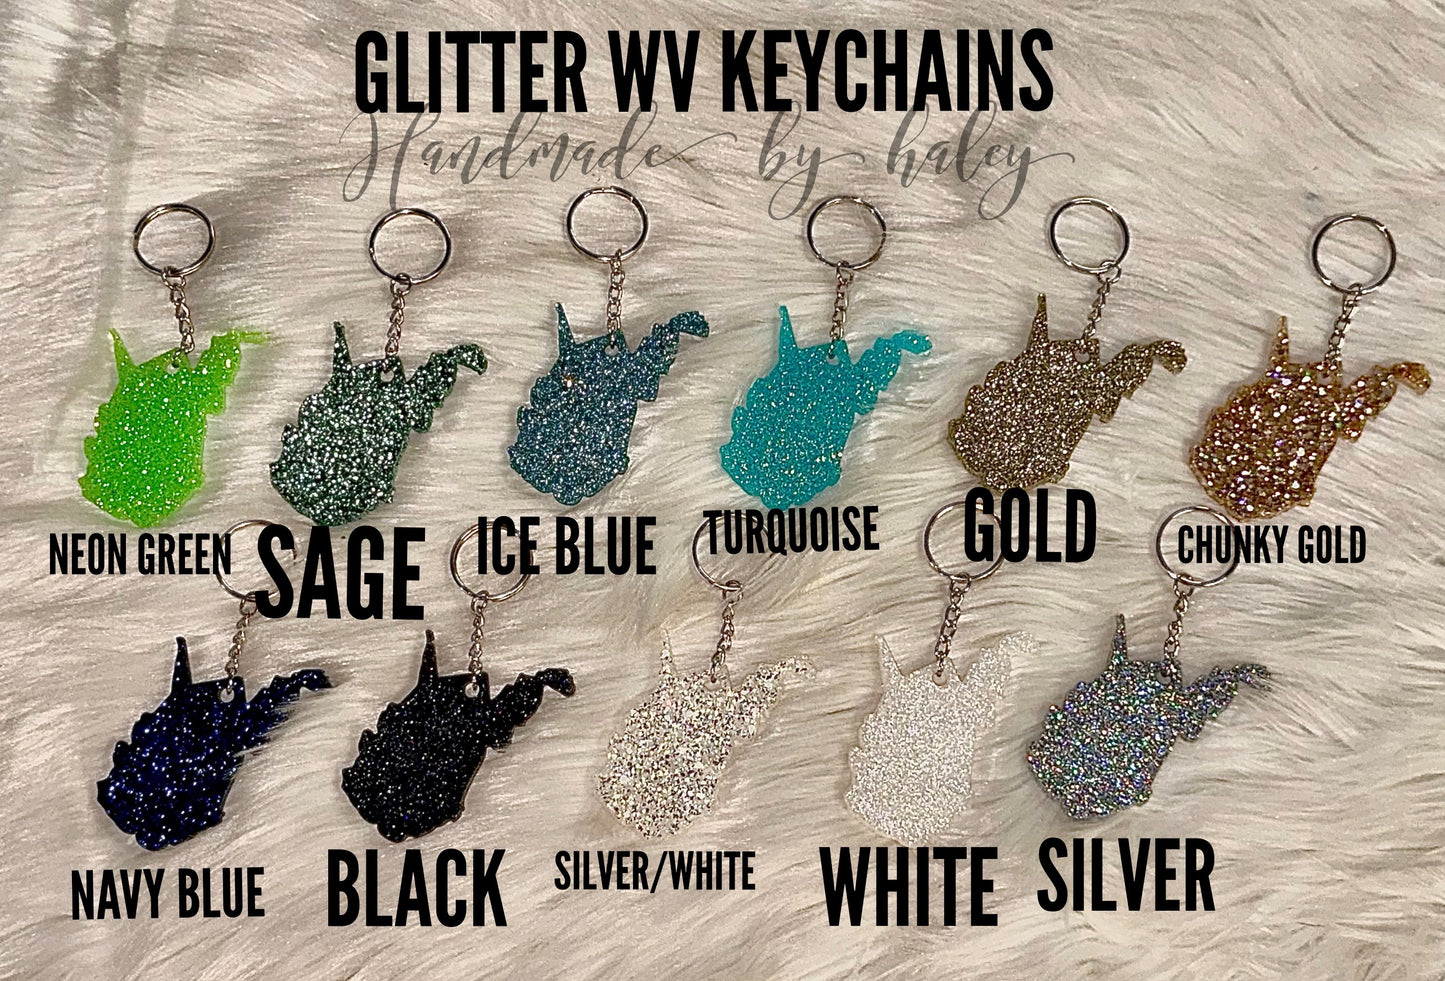 WV Glitter Keychain